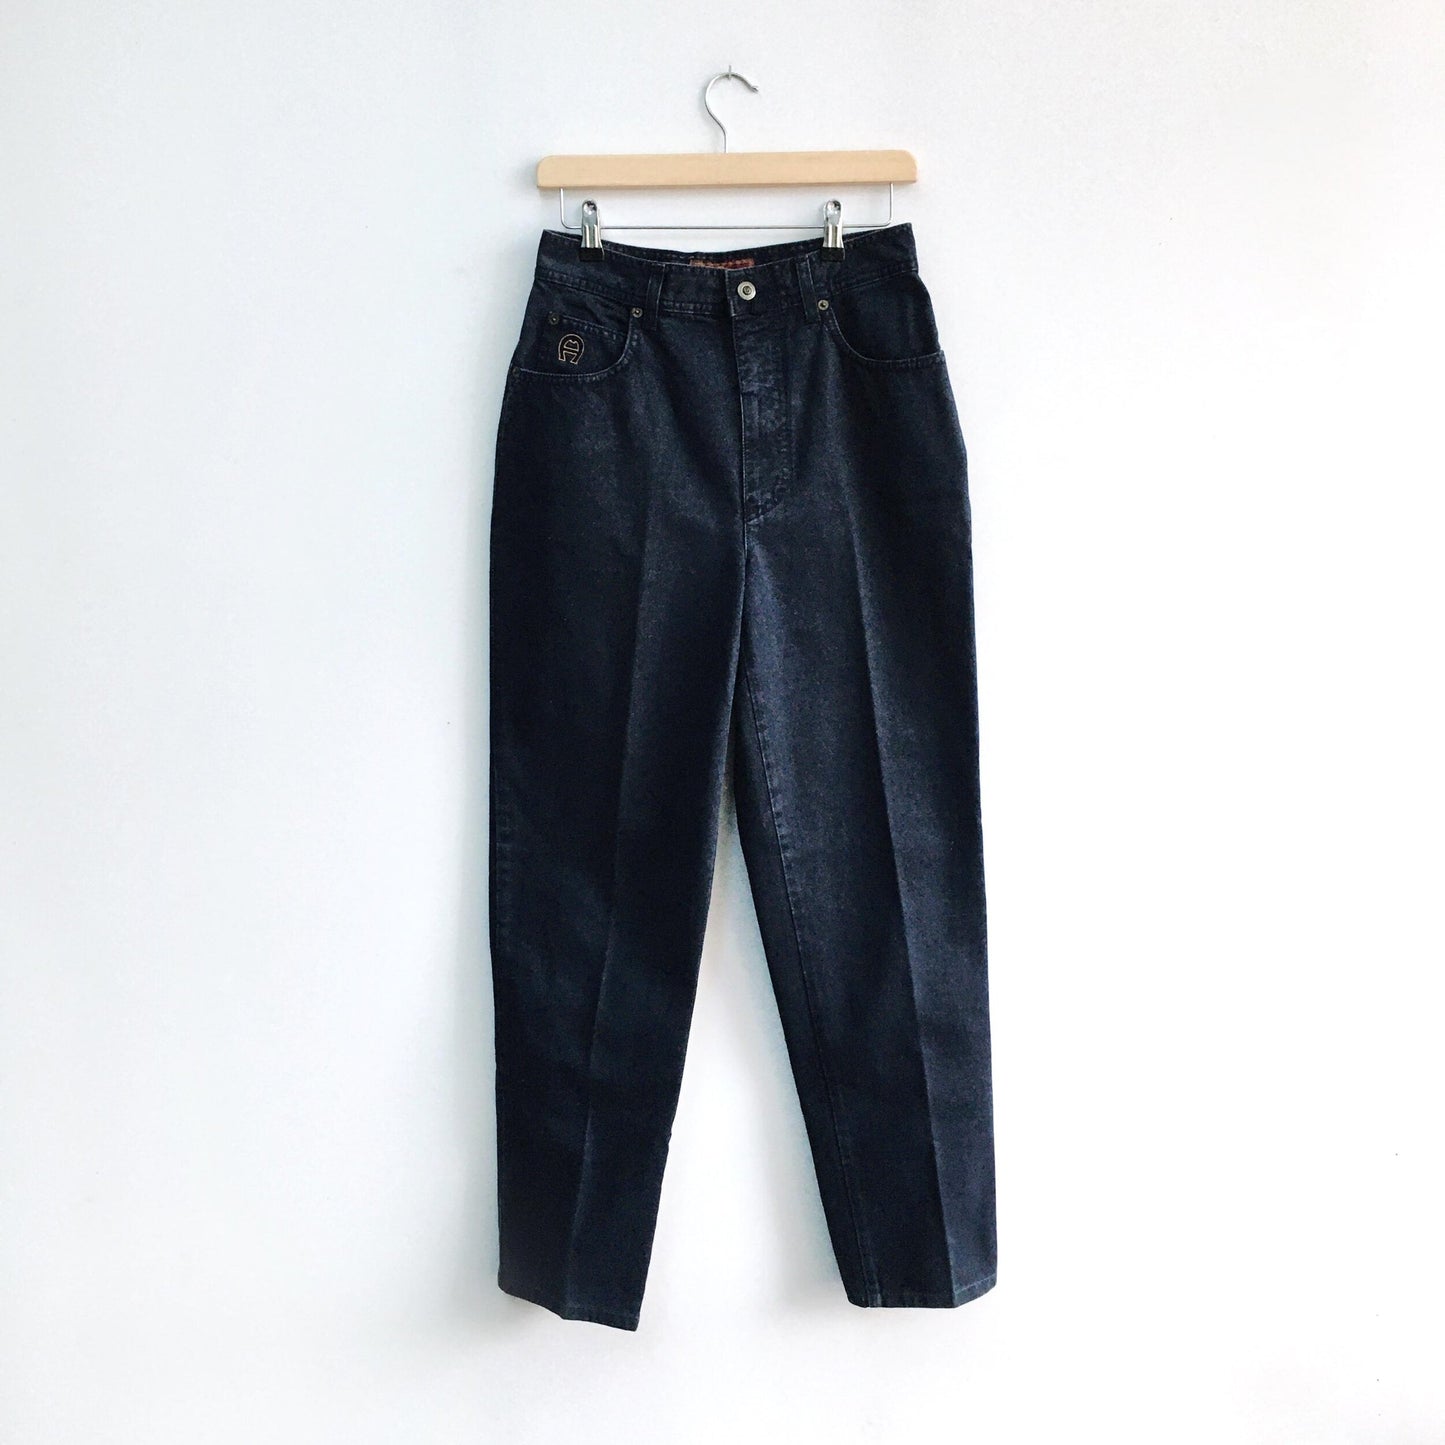 Vintage Etienne Aigner Jeans - size 46